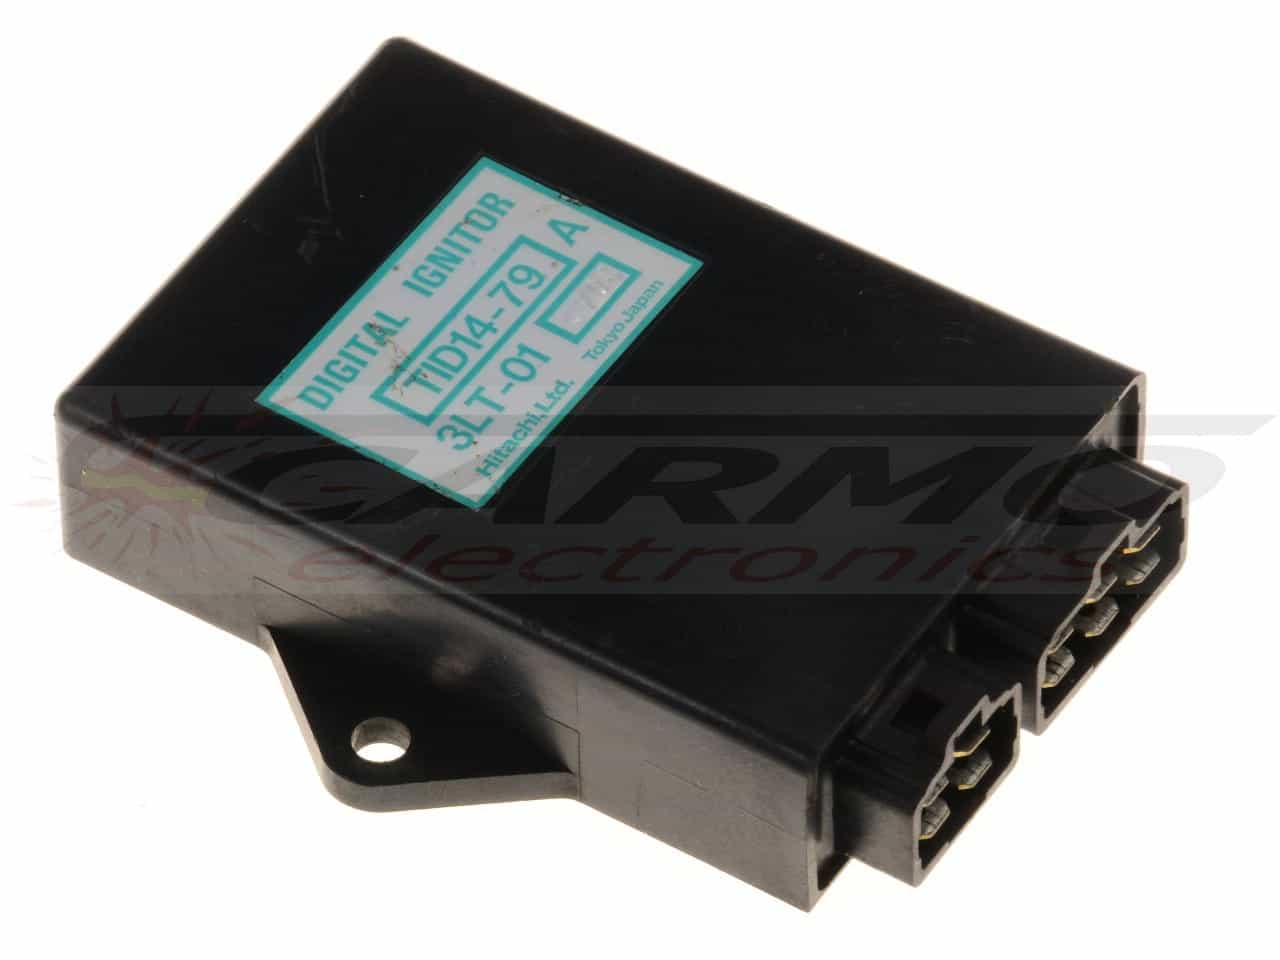 YX600 radian TCI CDI dispositif de commande boîte noire (TID14-79, 3LT-00, 3LT-01)